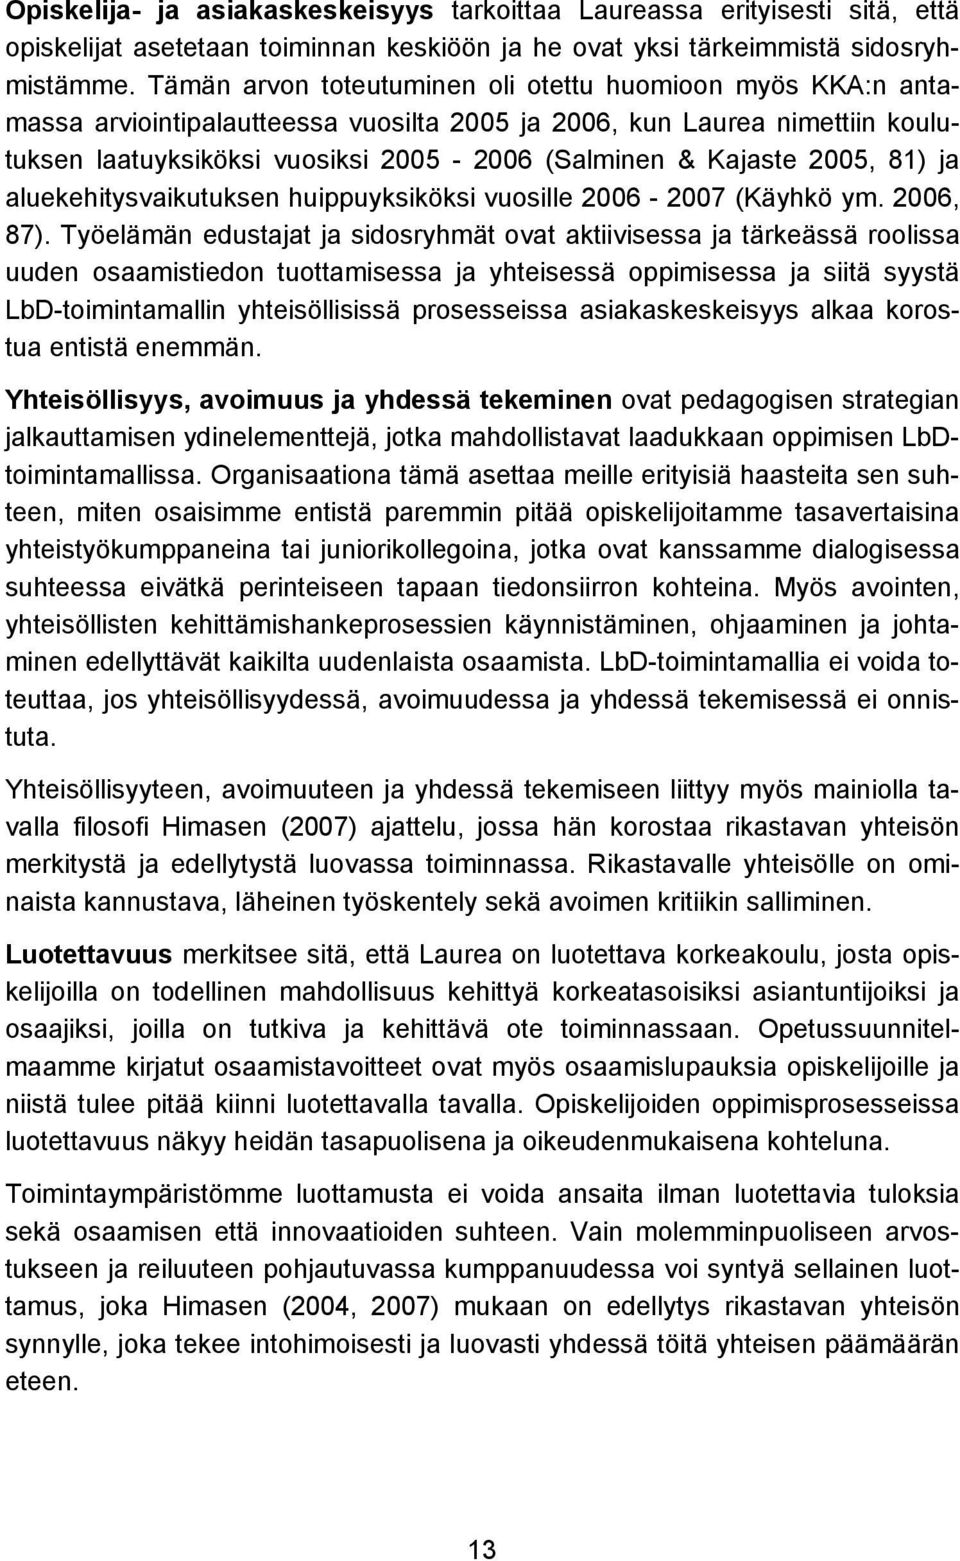 2005, 81) ja aluekehitysvaikutuksen huippuyksiköksi vuosille 2006-2007 (Käyhkö ym. 2006, 87).